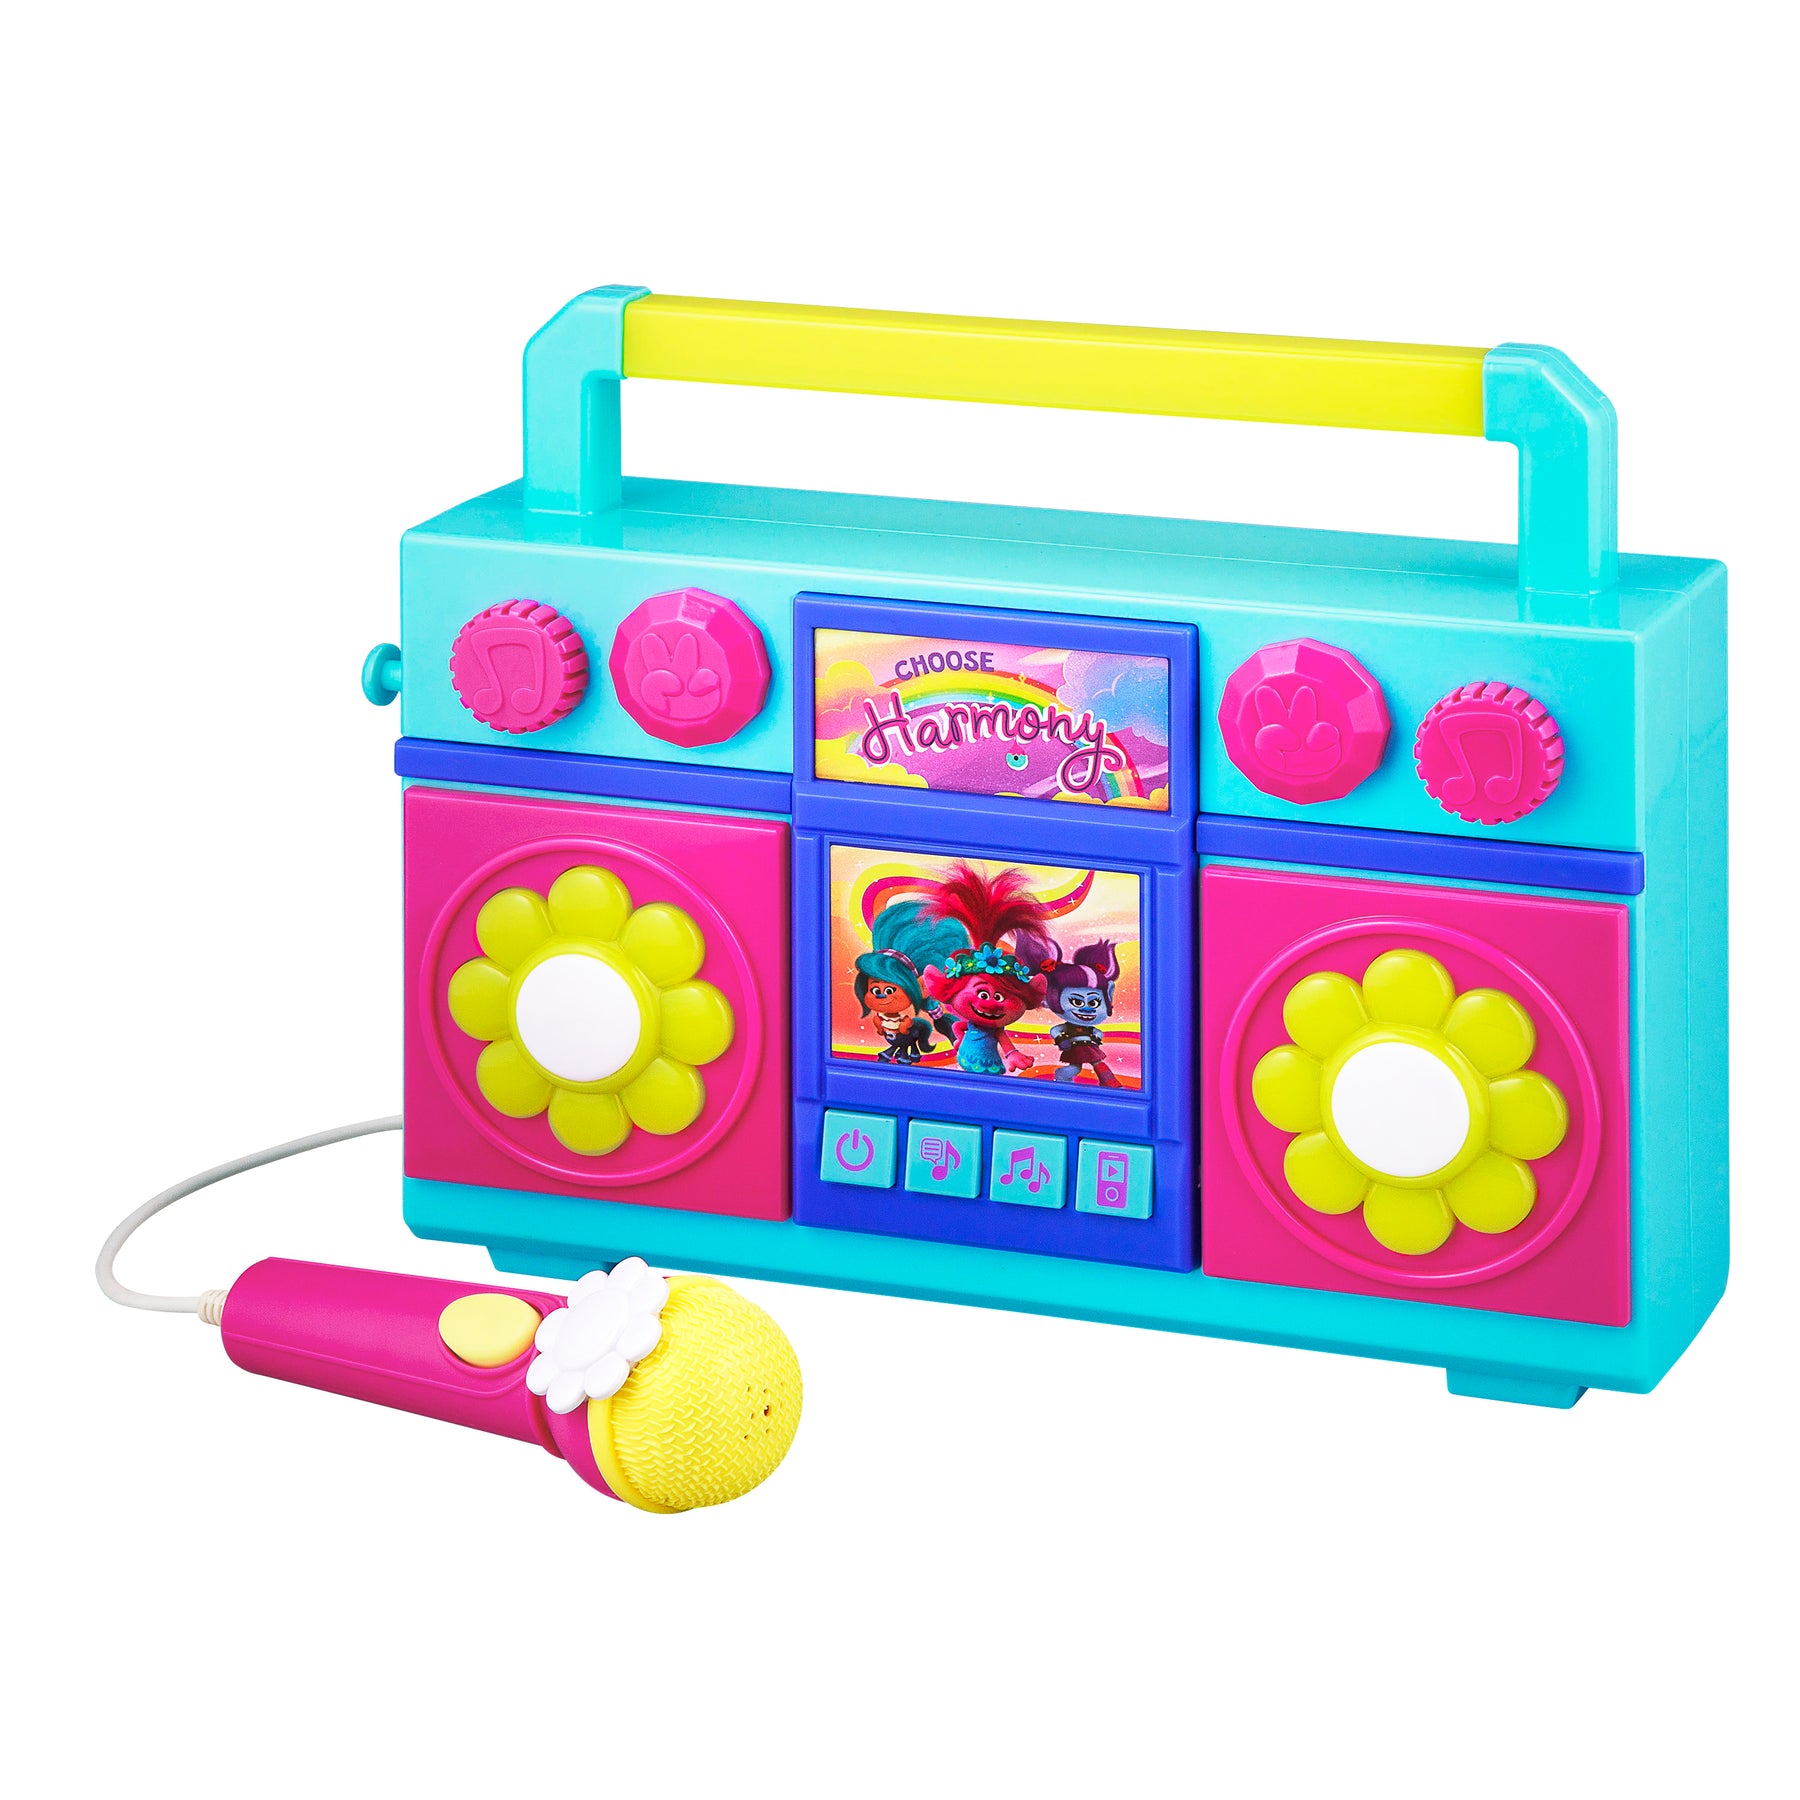 https://www.ekids.com/cdn/shop/products/Trolls-Karaoke-Boombox-Toy-two_1800x1800.jpg?v=1669060427